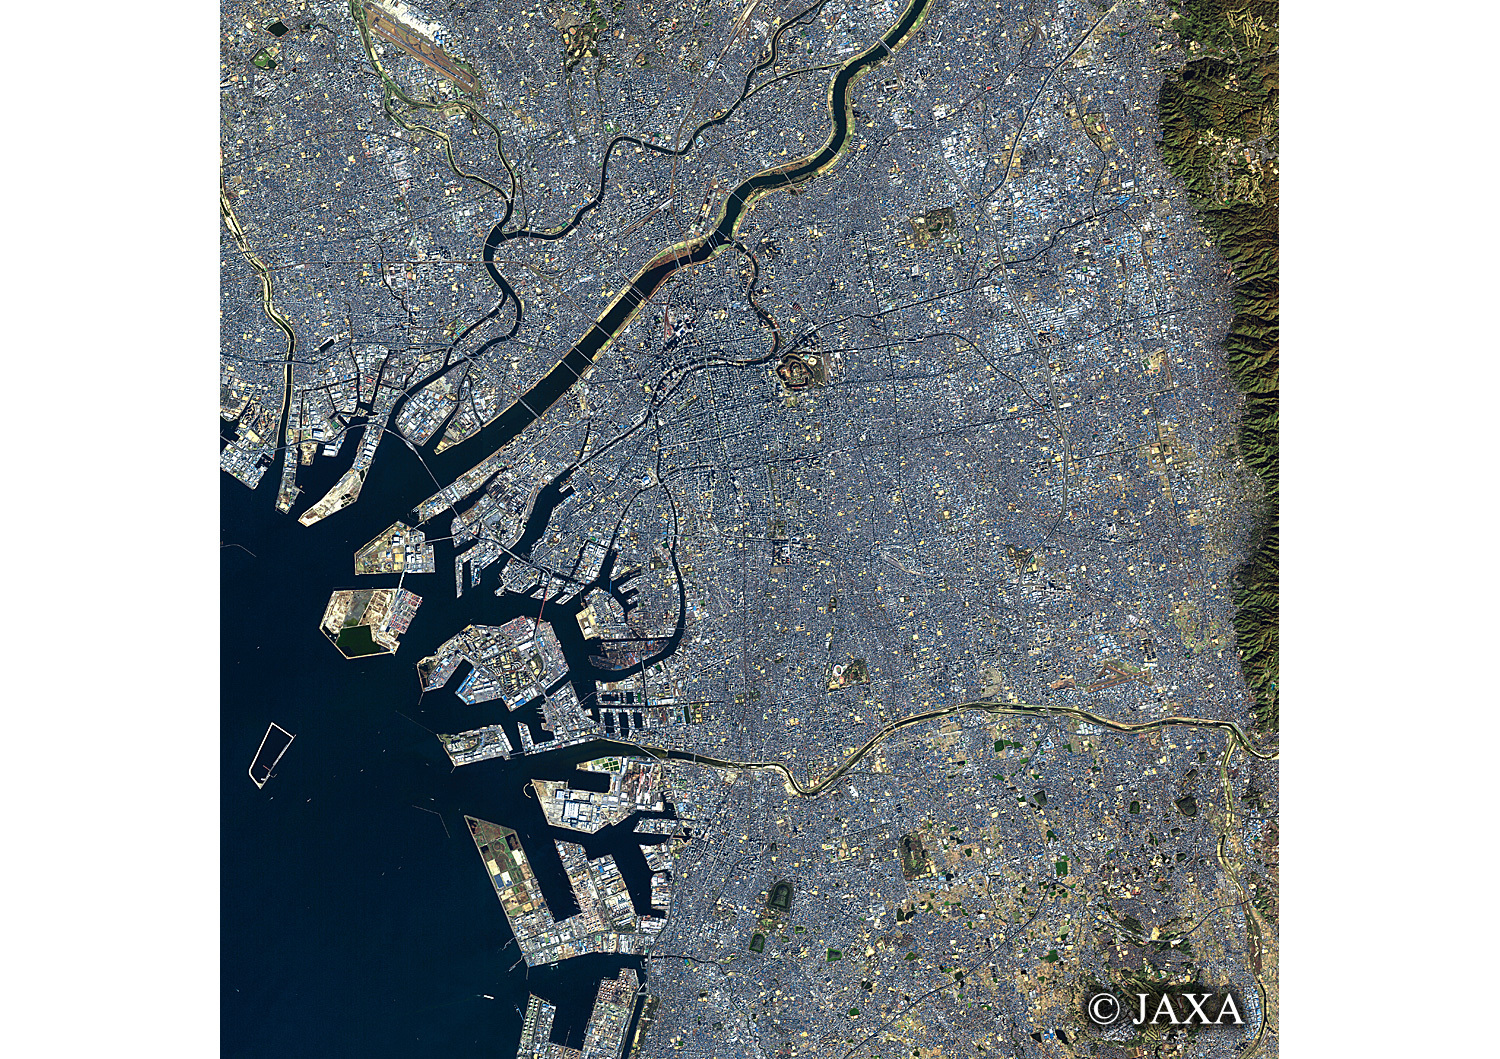 だいちから見た日本の都市 大阪府:衛星画像